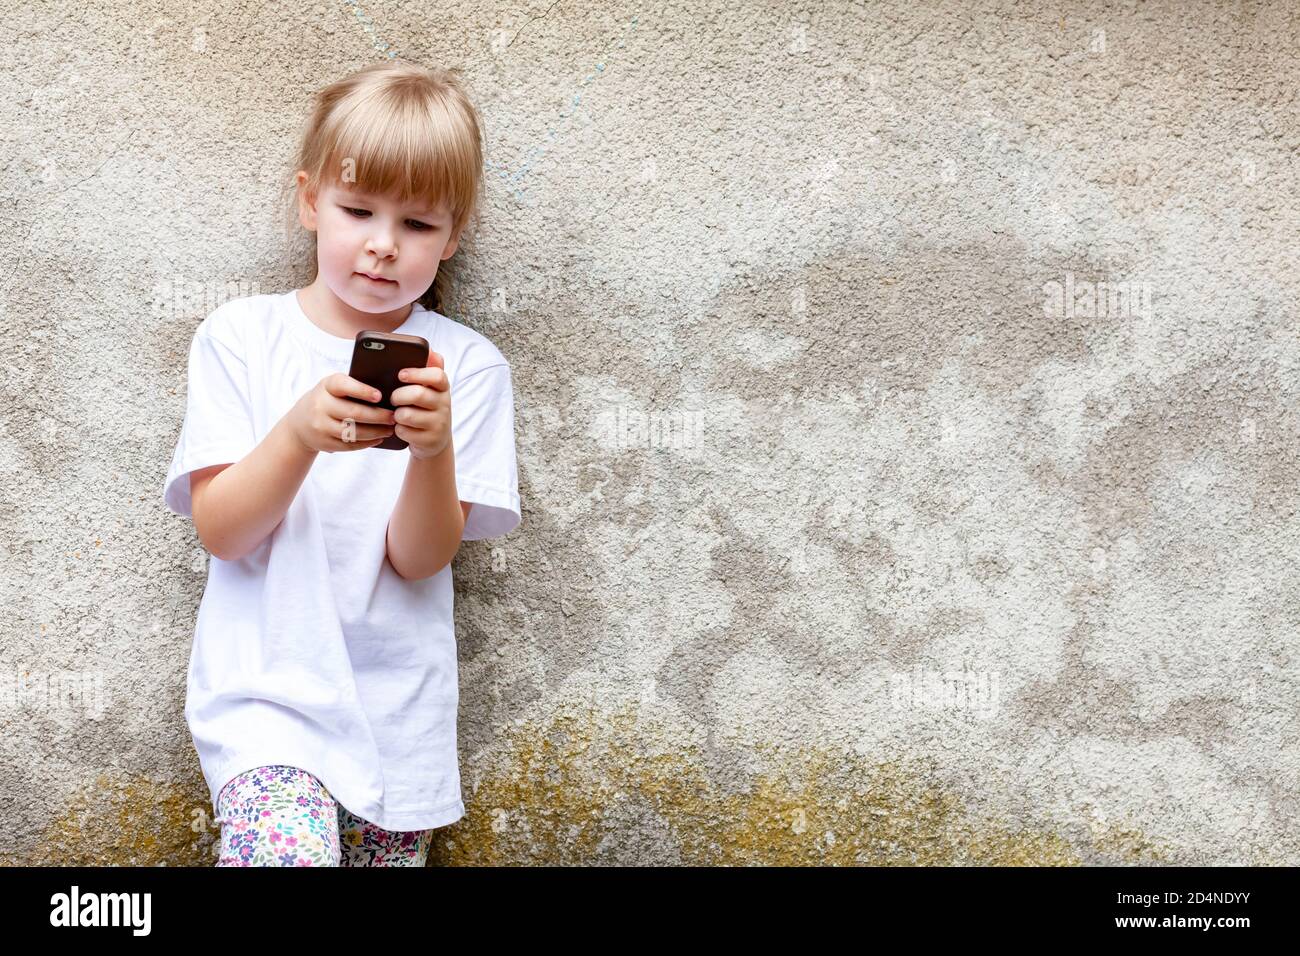 Bambina, bambino che usa uno smartphone moderno in piedi all'aperto. Capretto da solo ha messo a fuoco sul suo telefono mobile, copyspace. Bambini occupati con tecnologia Foto Stock